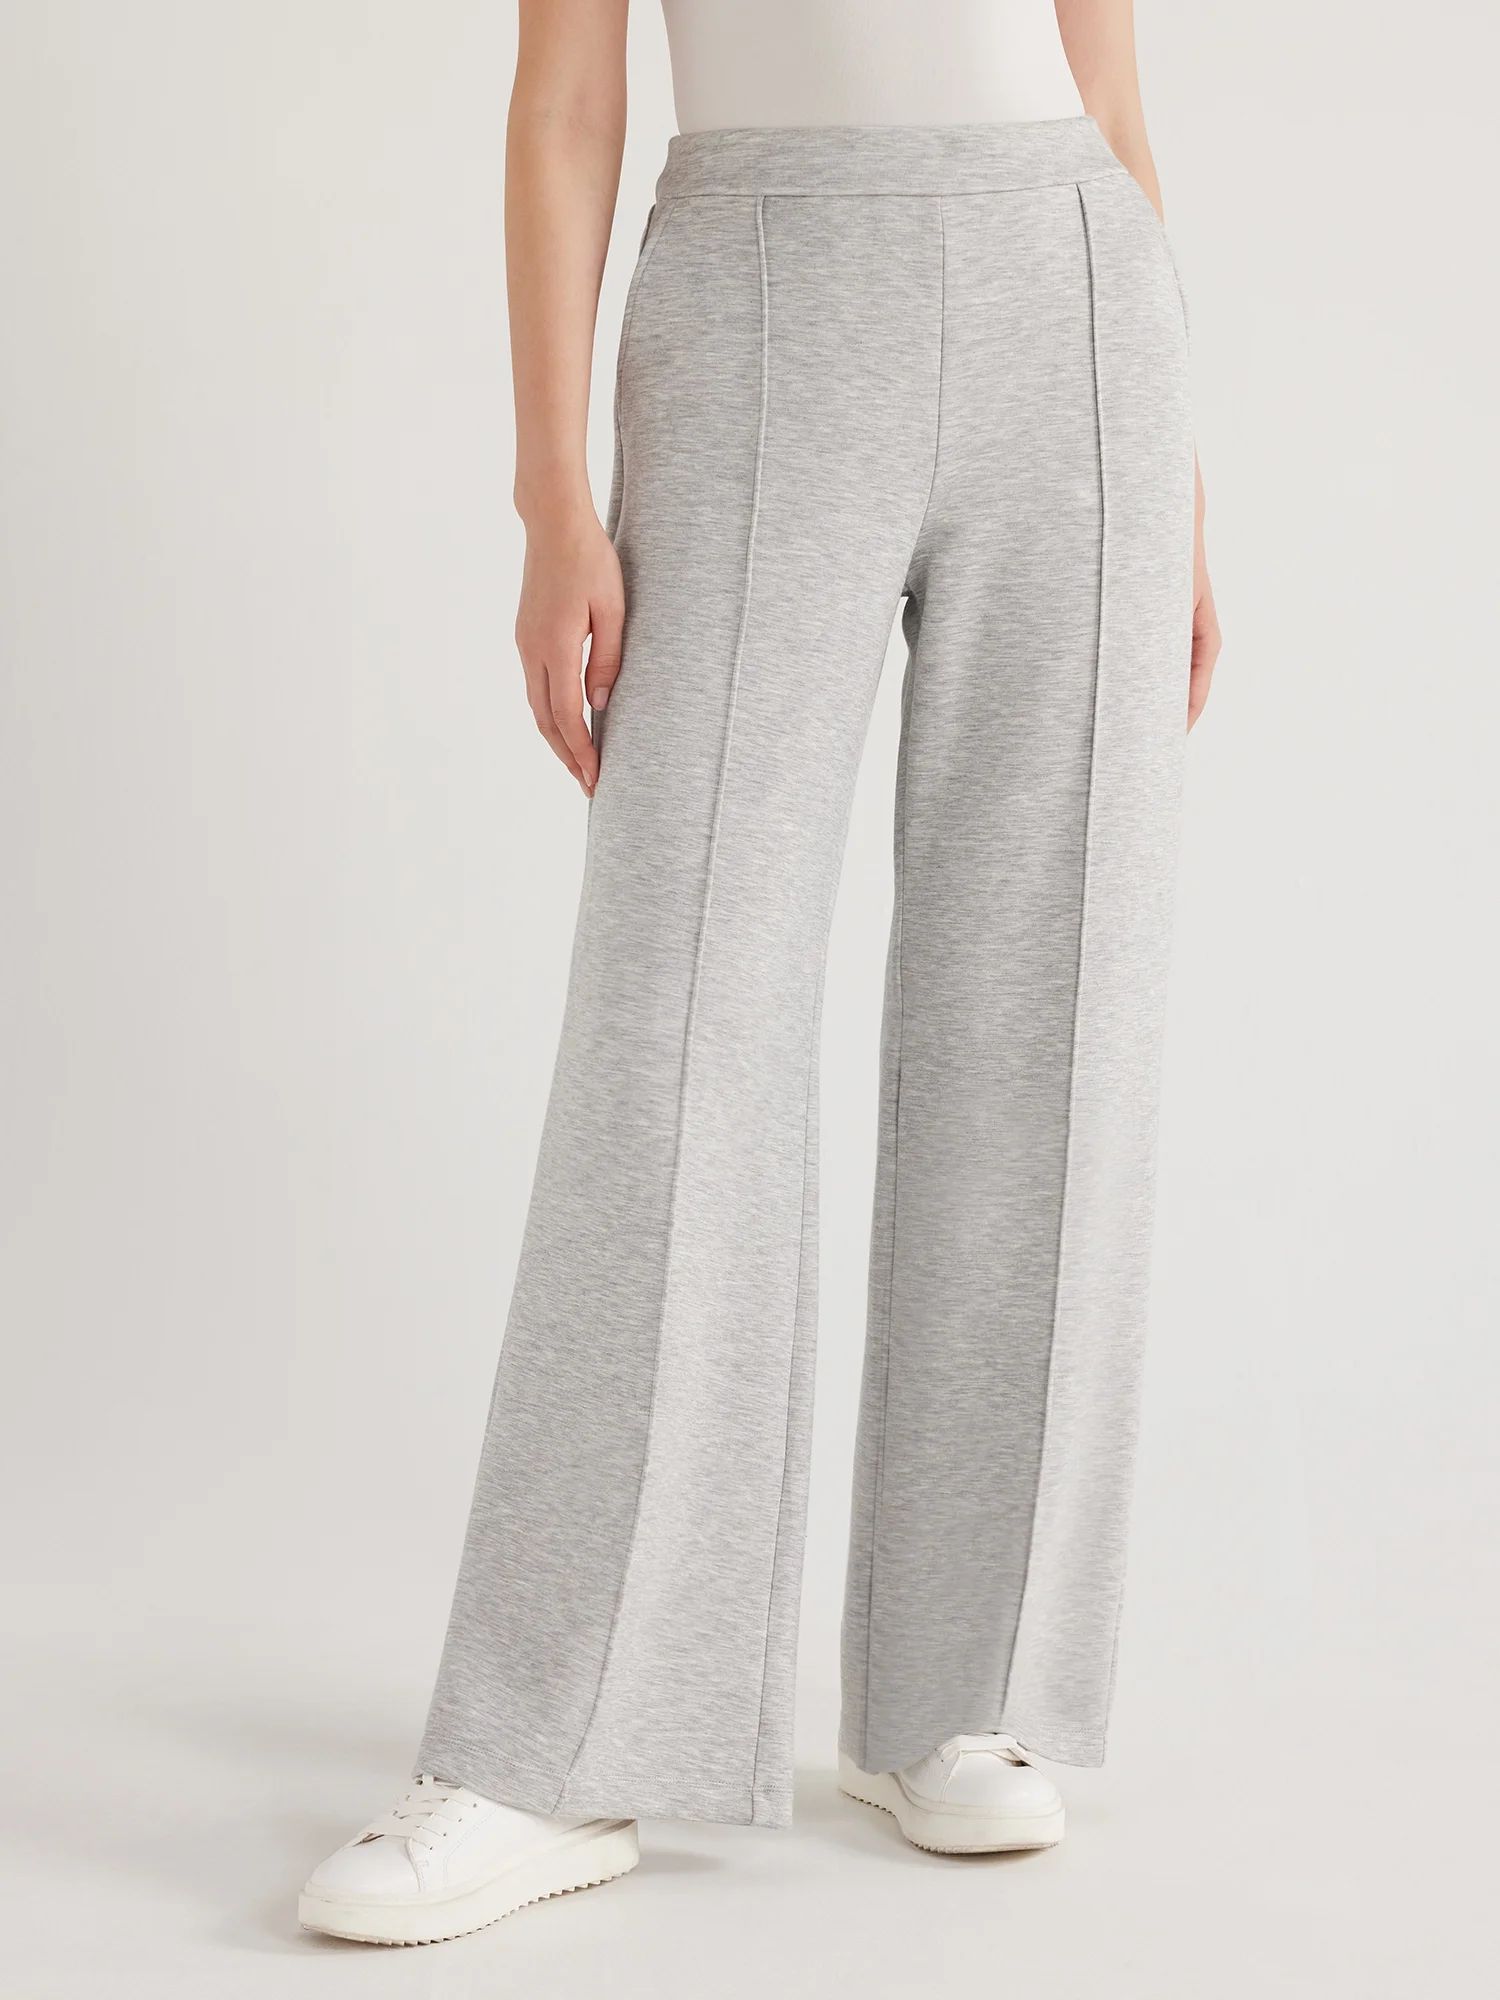 Scoop Women's Ultimate ScubaKnit Trouser Pants, Sizes XS-XXL | Walmart (US)